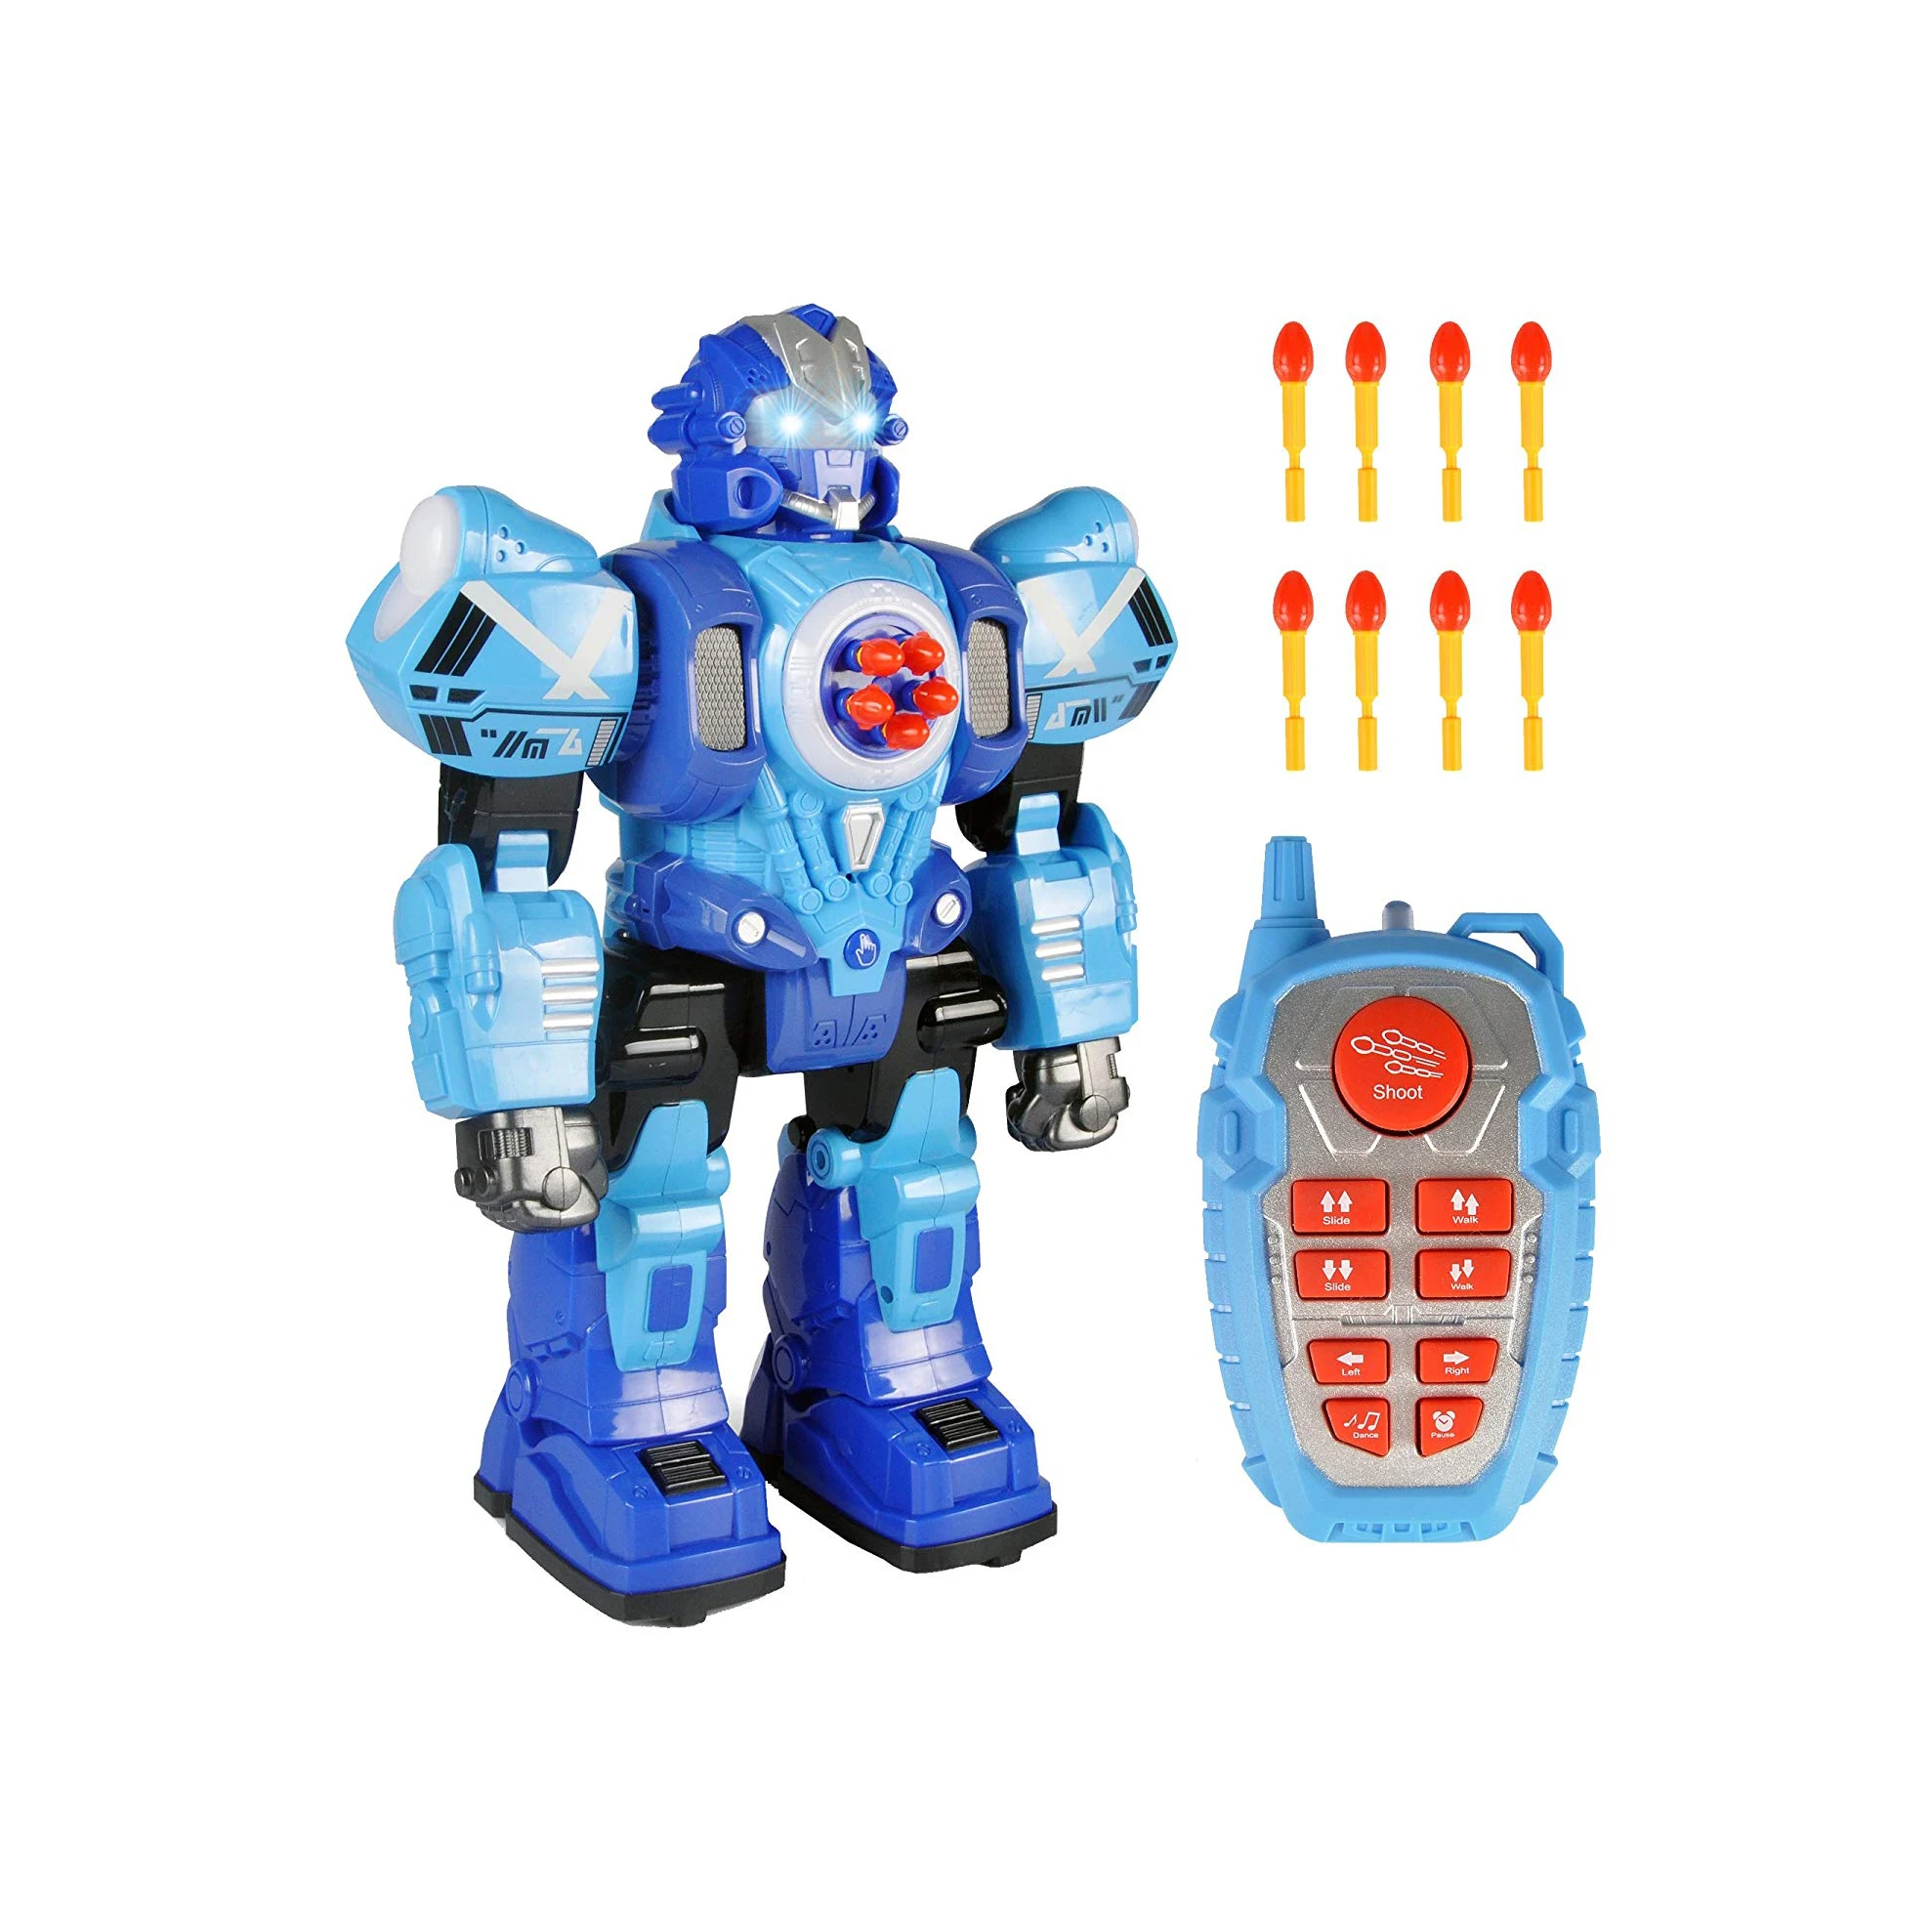 Мальчик купил робота. Robot Remote Control игрушка. Робот 7-411м на батарейках, в коробке (10502110/011117/0061388, Китай). ТОБОТЫИГРУШКИ. Тоботы игрушки.